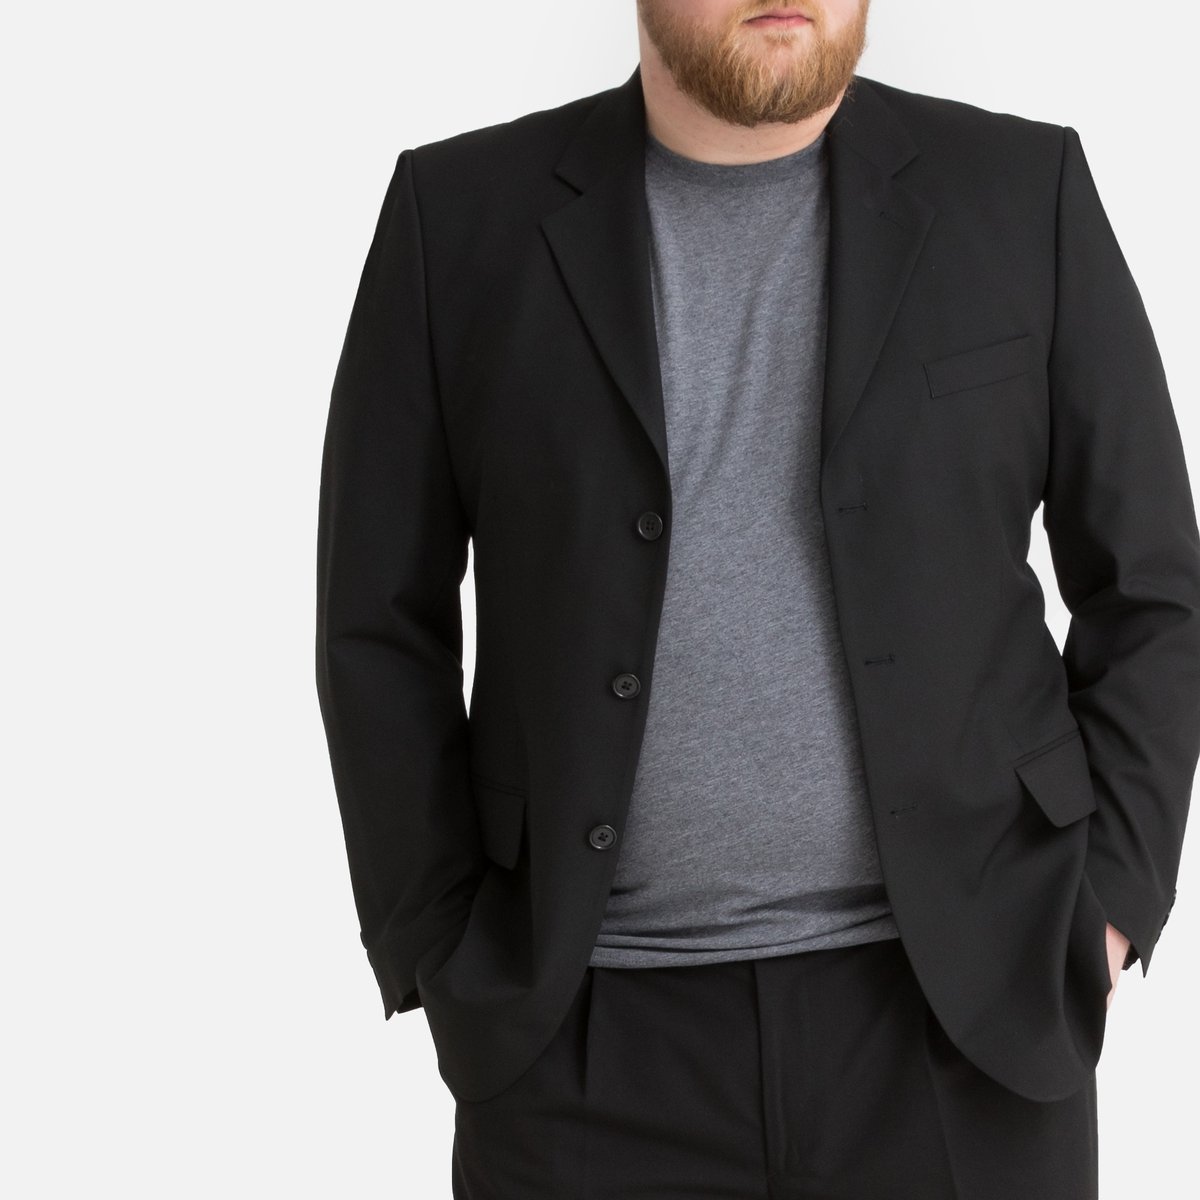 Пиджак La Redoute Костюмный прямого покроя на рост более м 58 черный, размер 58